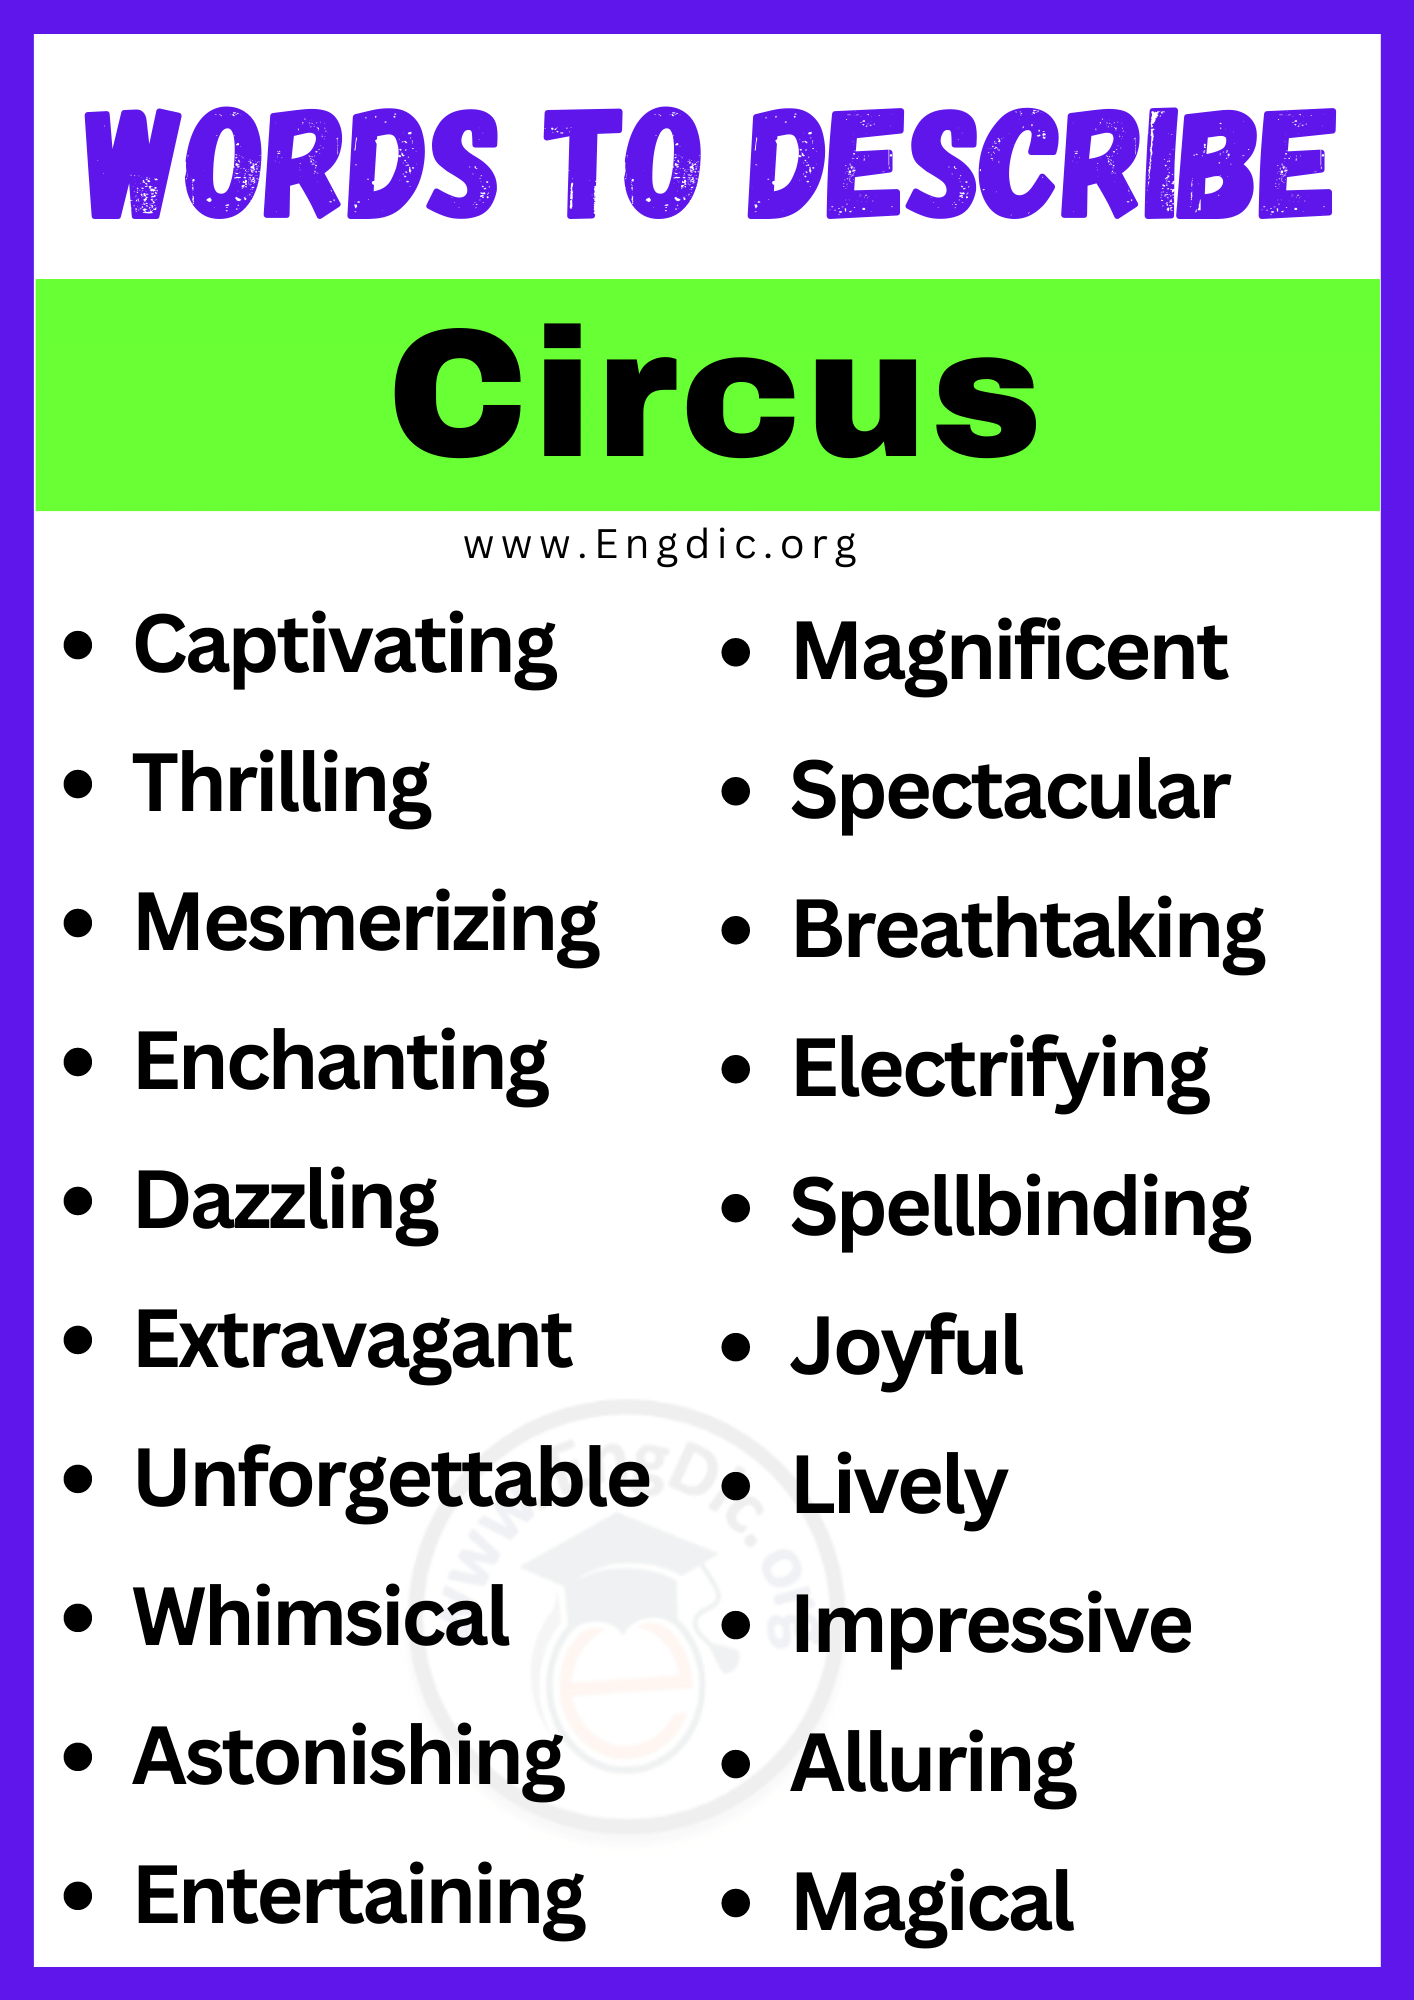 Words to Describe Circus